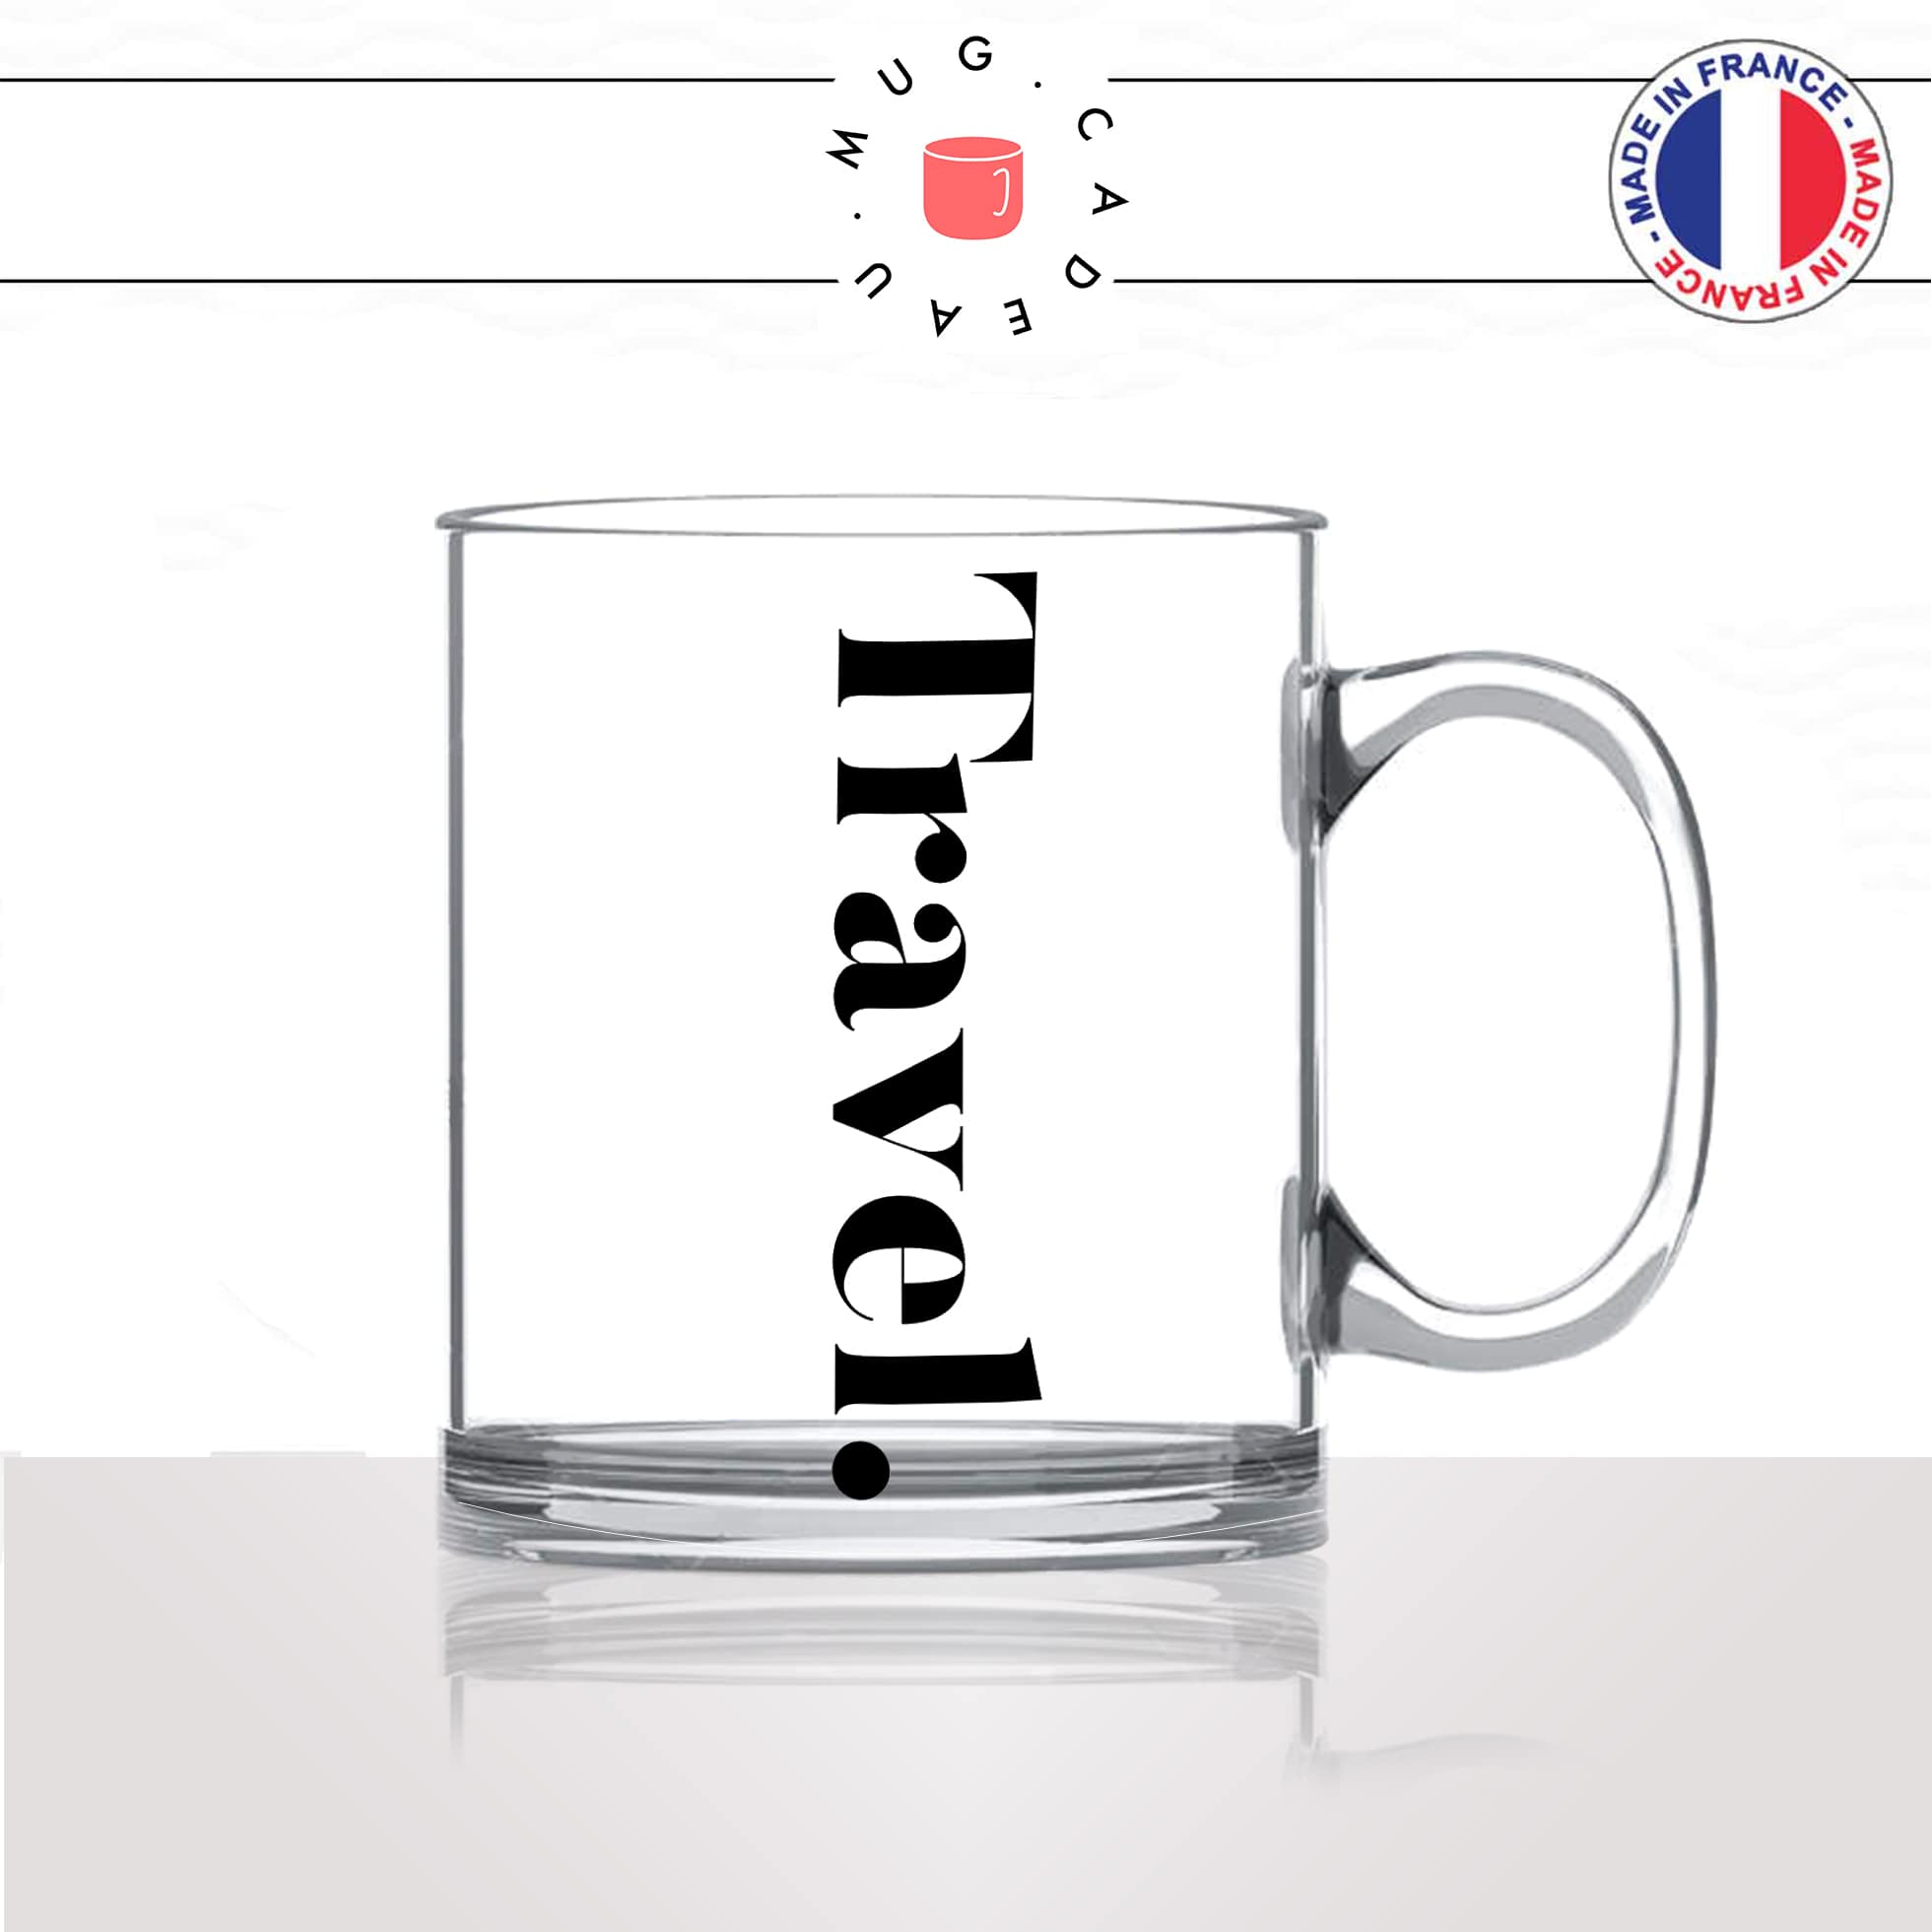 mug-tasse-en-verre-transparent-glass-travel-voyage-calligraphie-lettrine-mot-anglais-collegue-décoration-amie-idée-cadeau-original-personnalisé-café-thé2-min